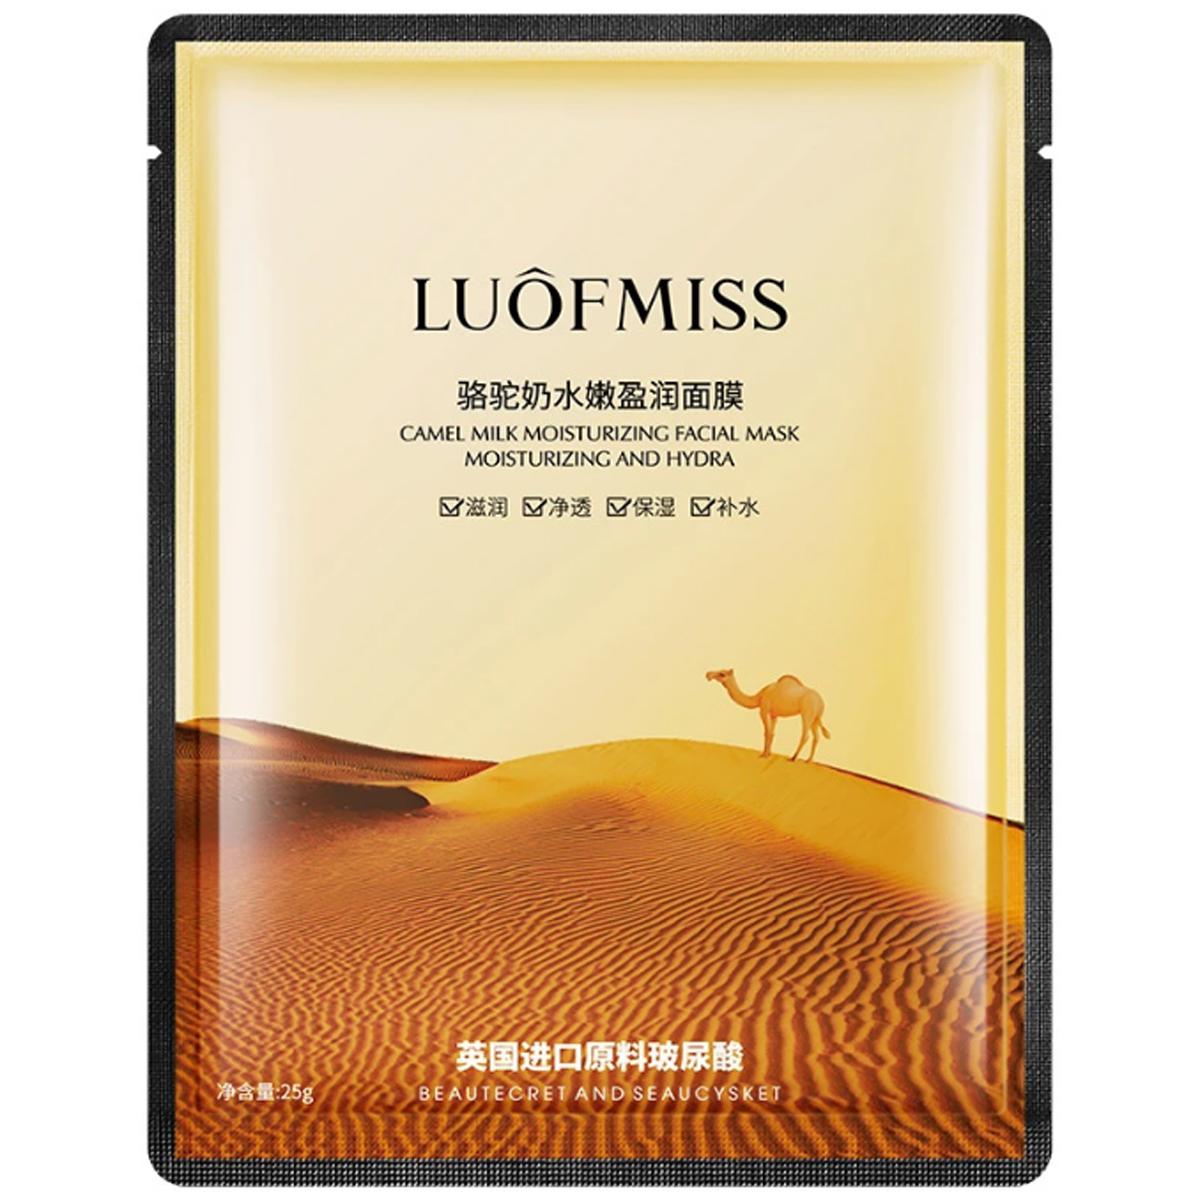 LuofMiss Camel Milk Moisturizing Facial Mask - Makeup Stash Pakistan - LUOFMISS